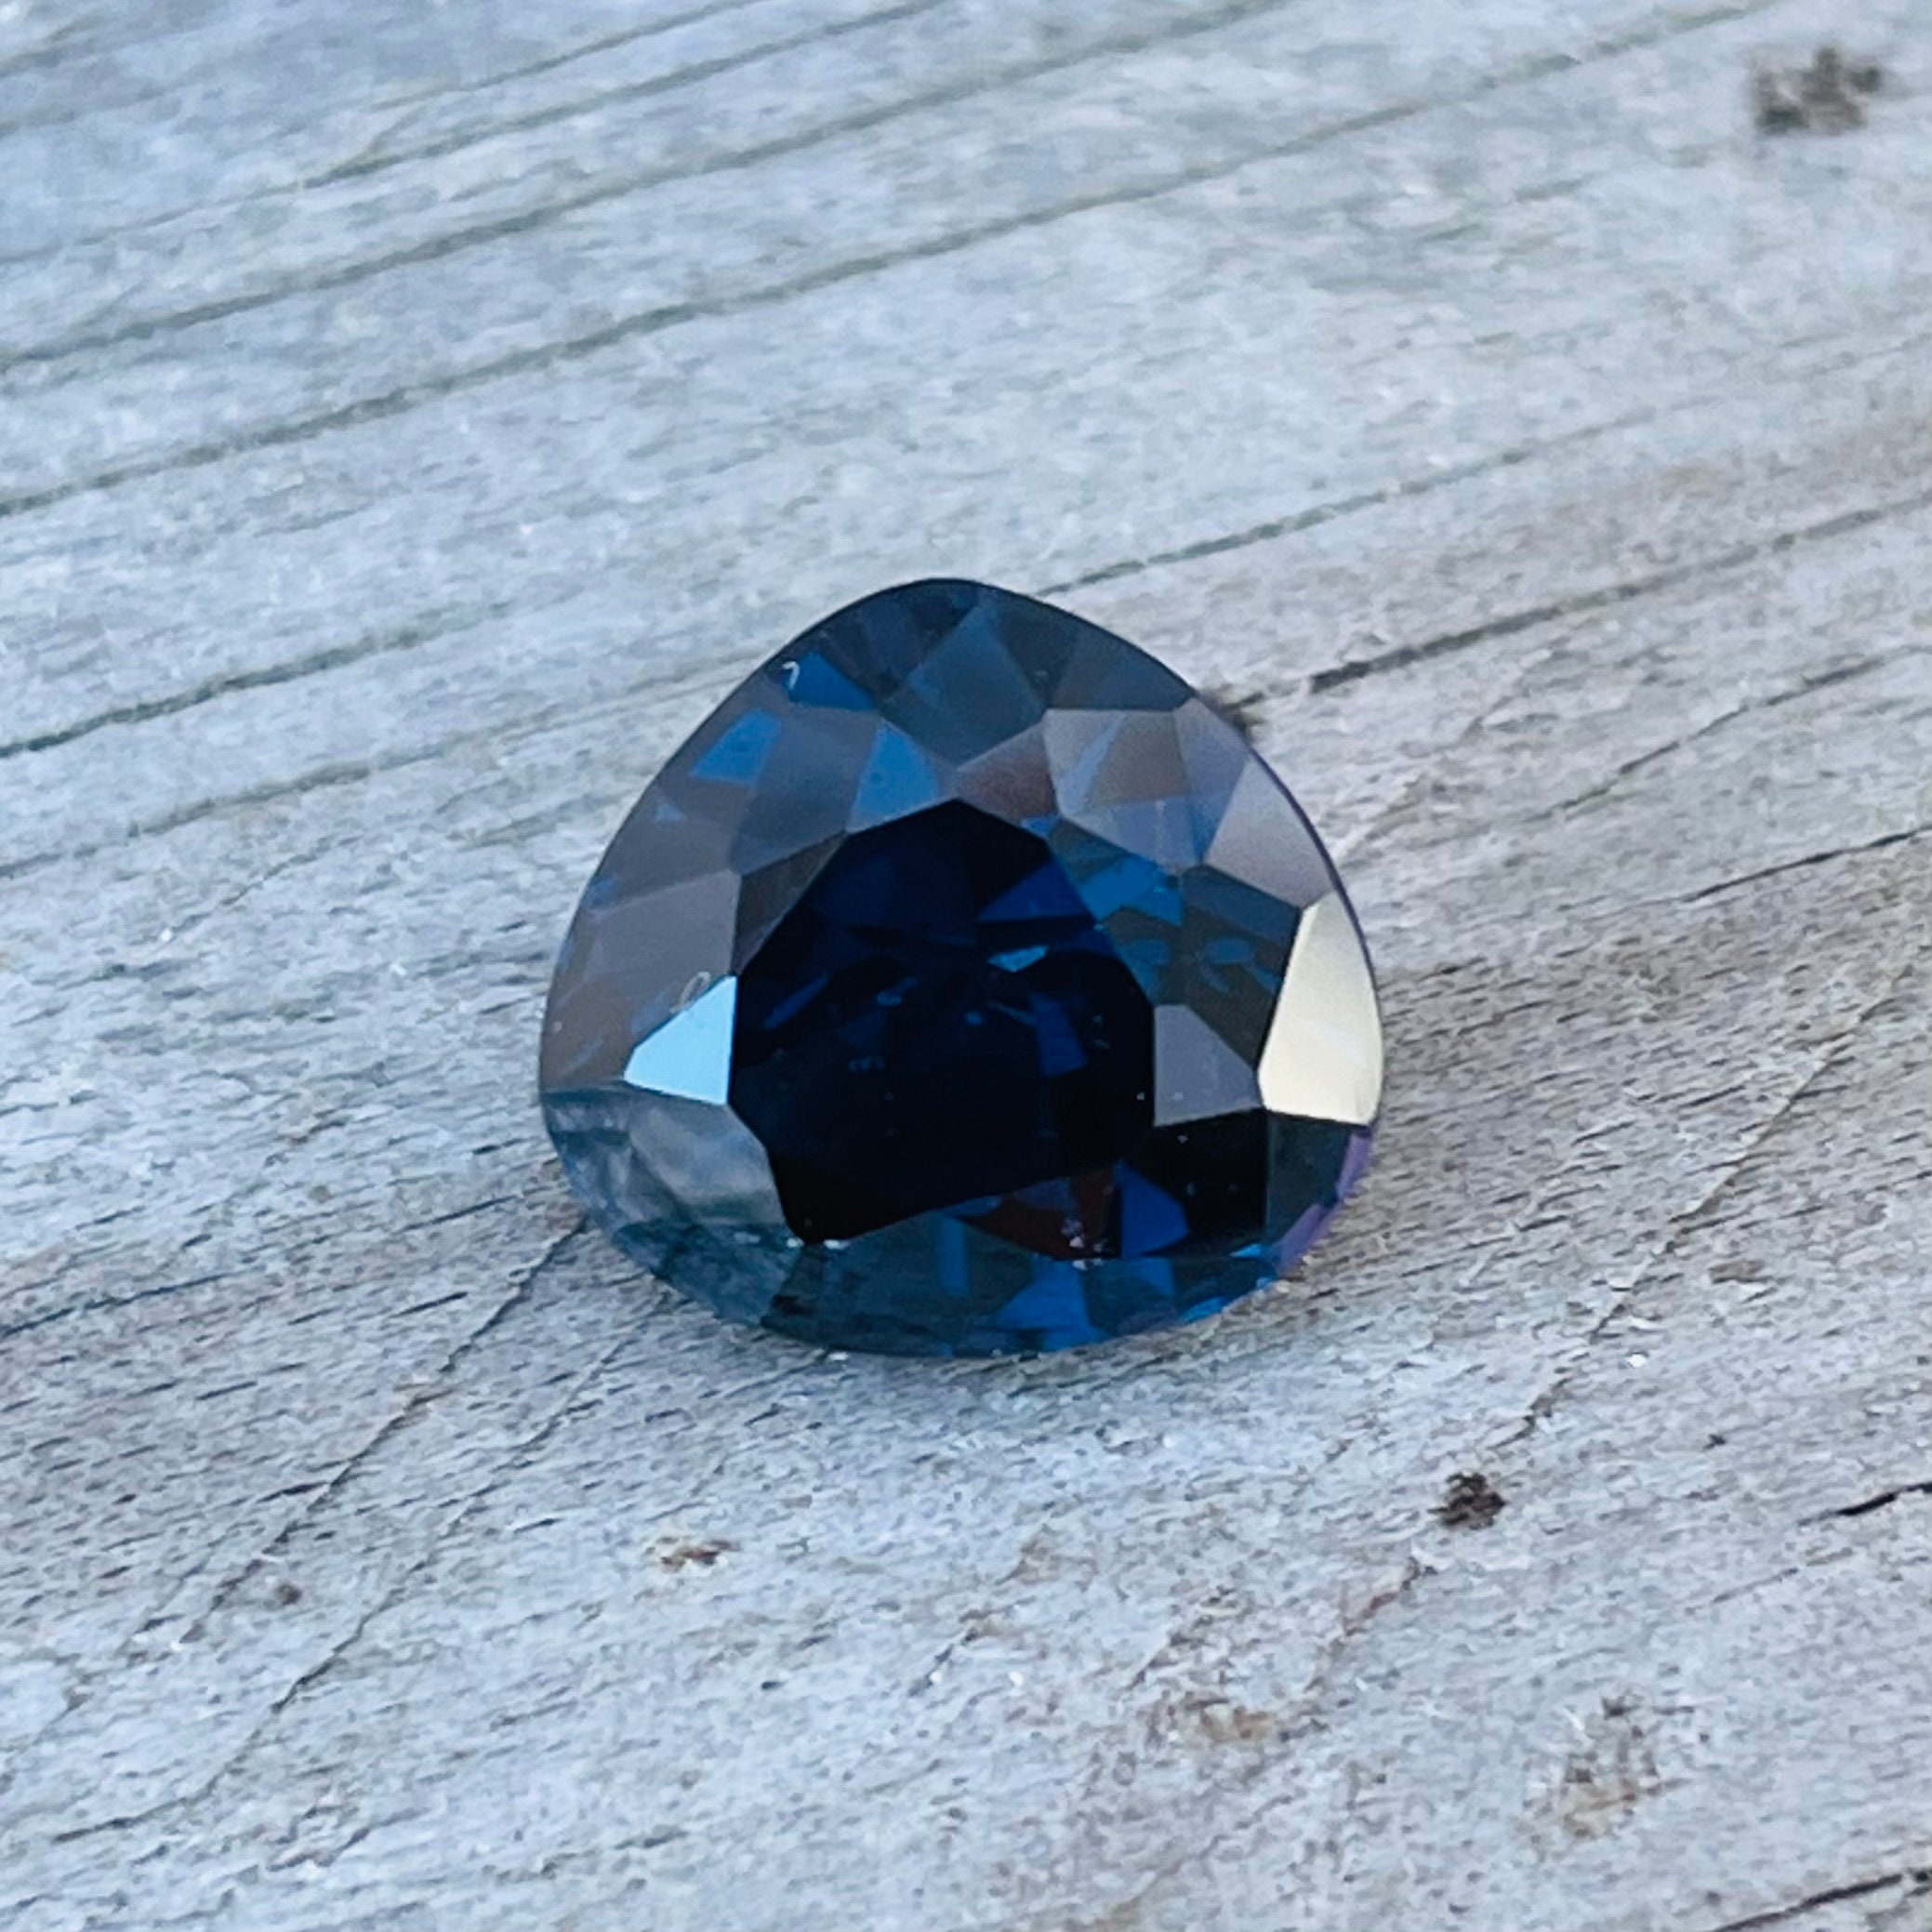 9 Lustrous Cobalt-Blue Spinel (Cobaltoan) Crystal Cluster - Vietnam  (#273717) For Sale 